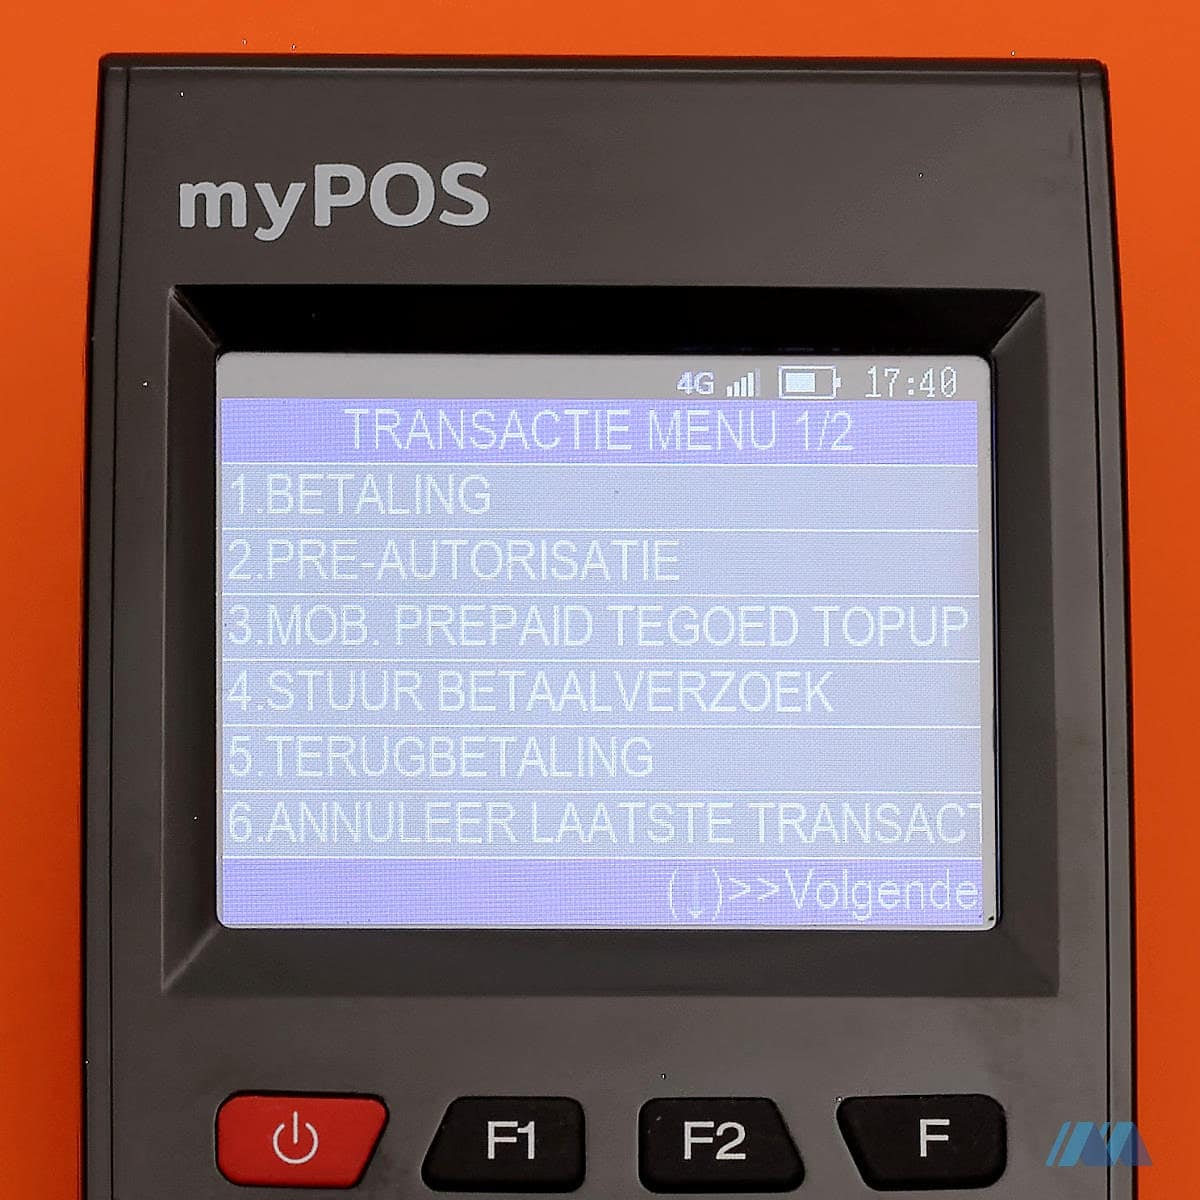 myPOS Go menu 1